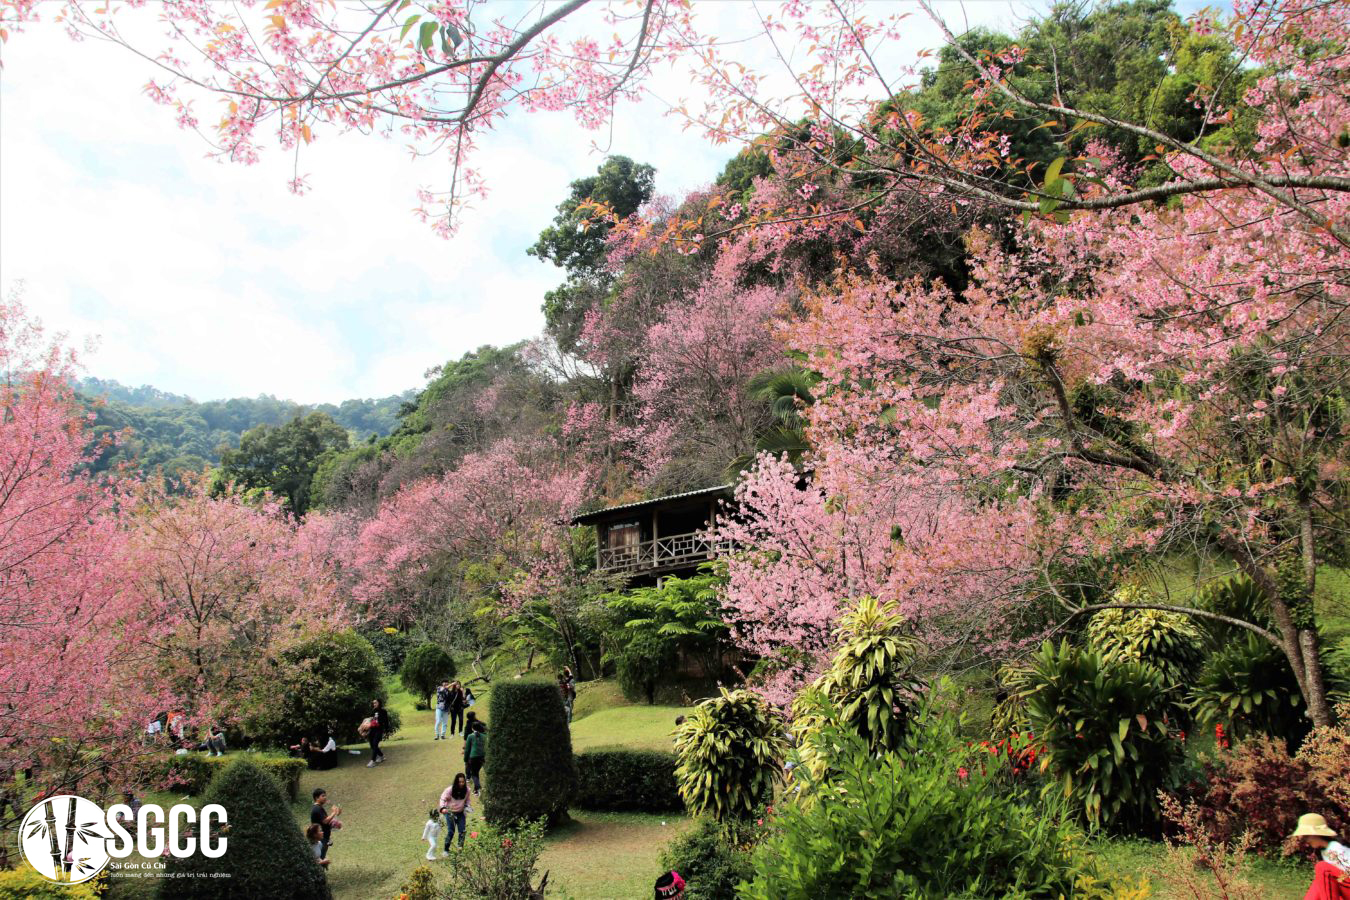 Vẻ đẹp rừng hoa anh đào nổi tiếng tại Thái Lan